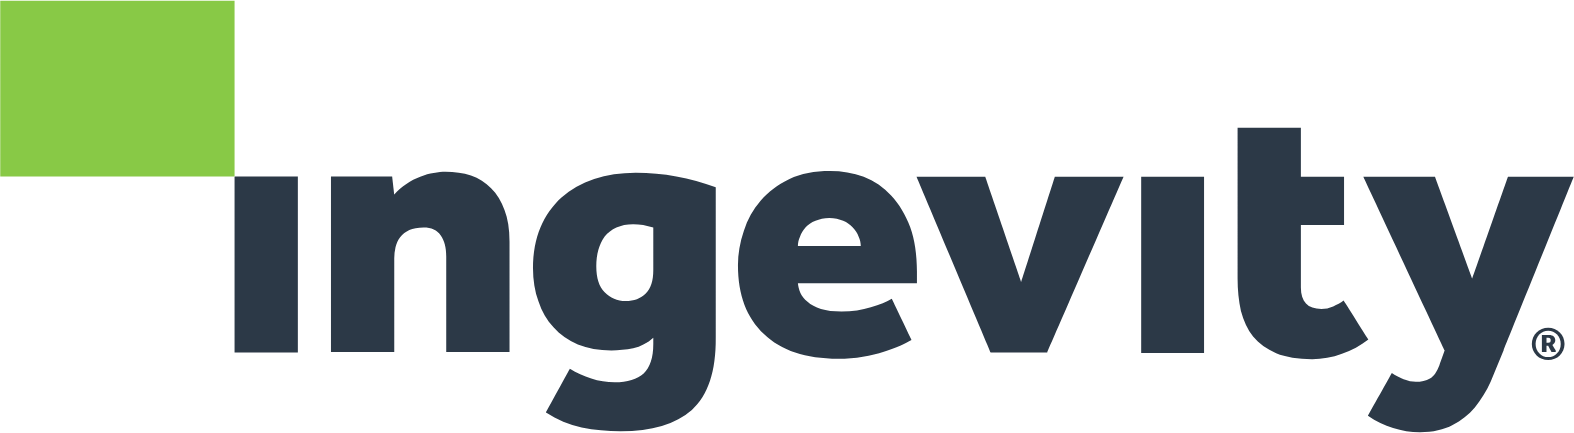 Ingevity logo large (transparent PNG)